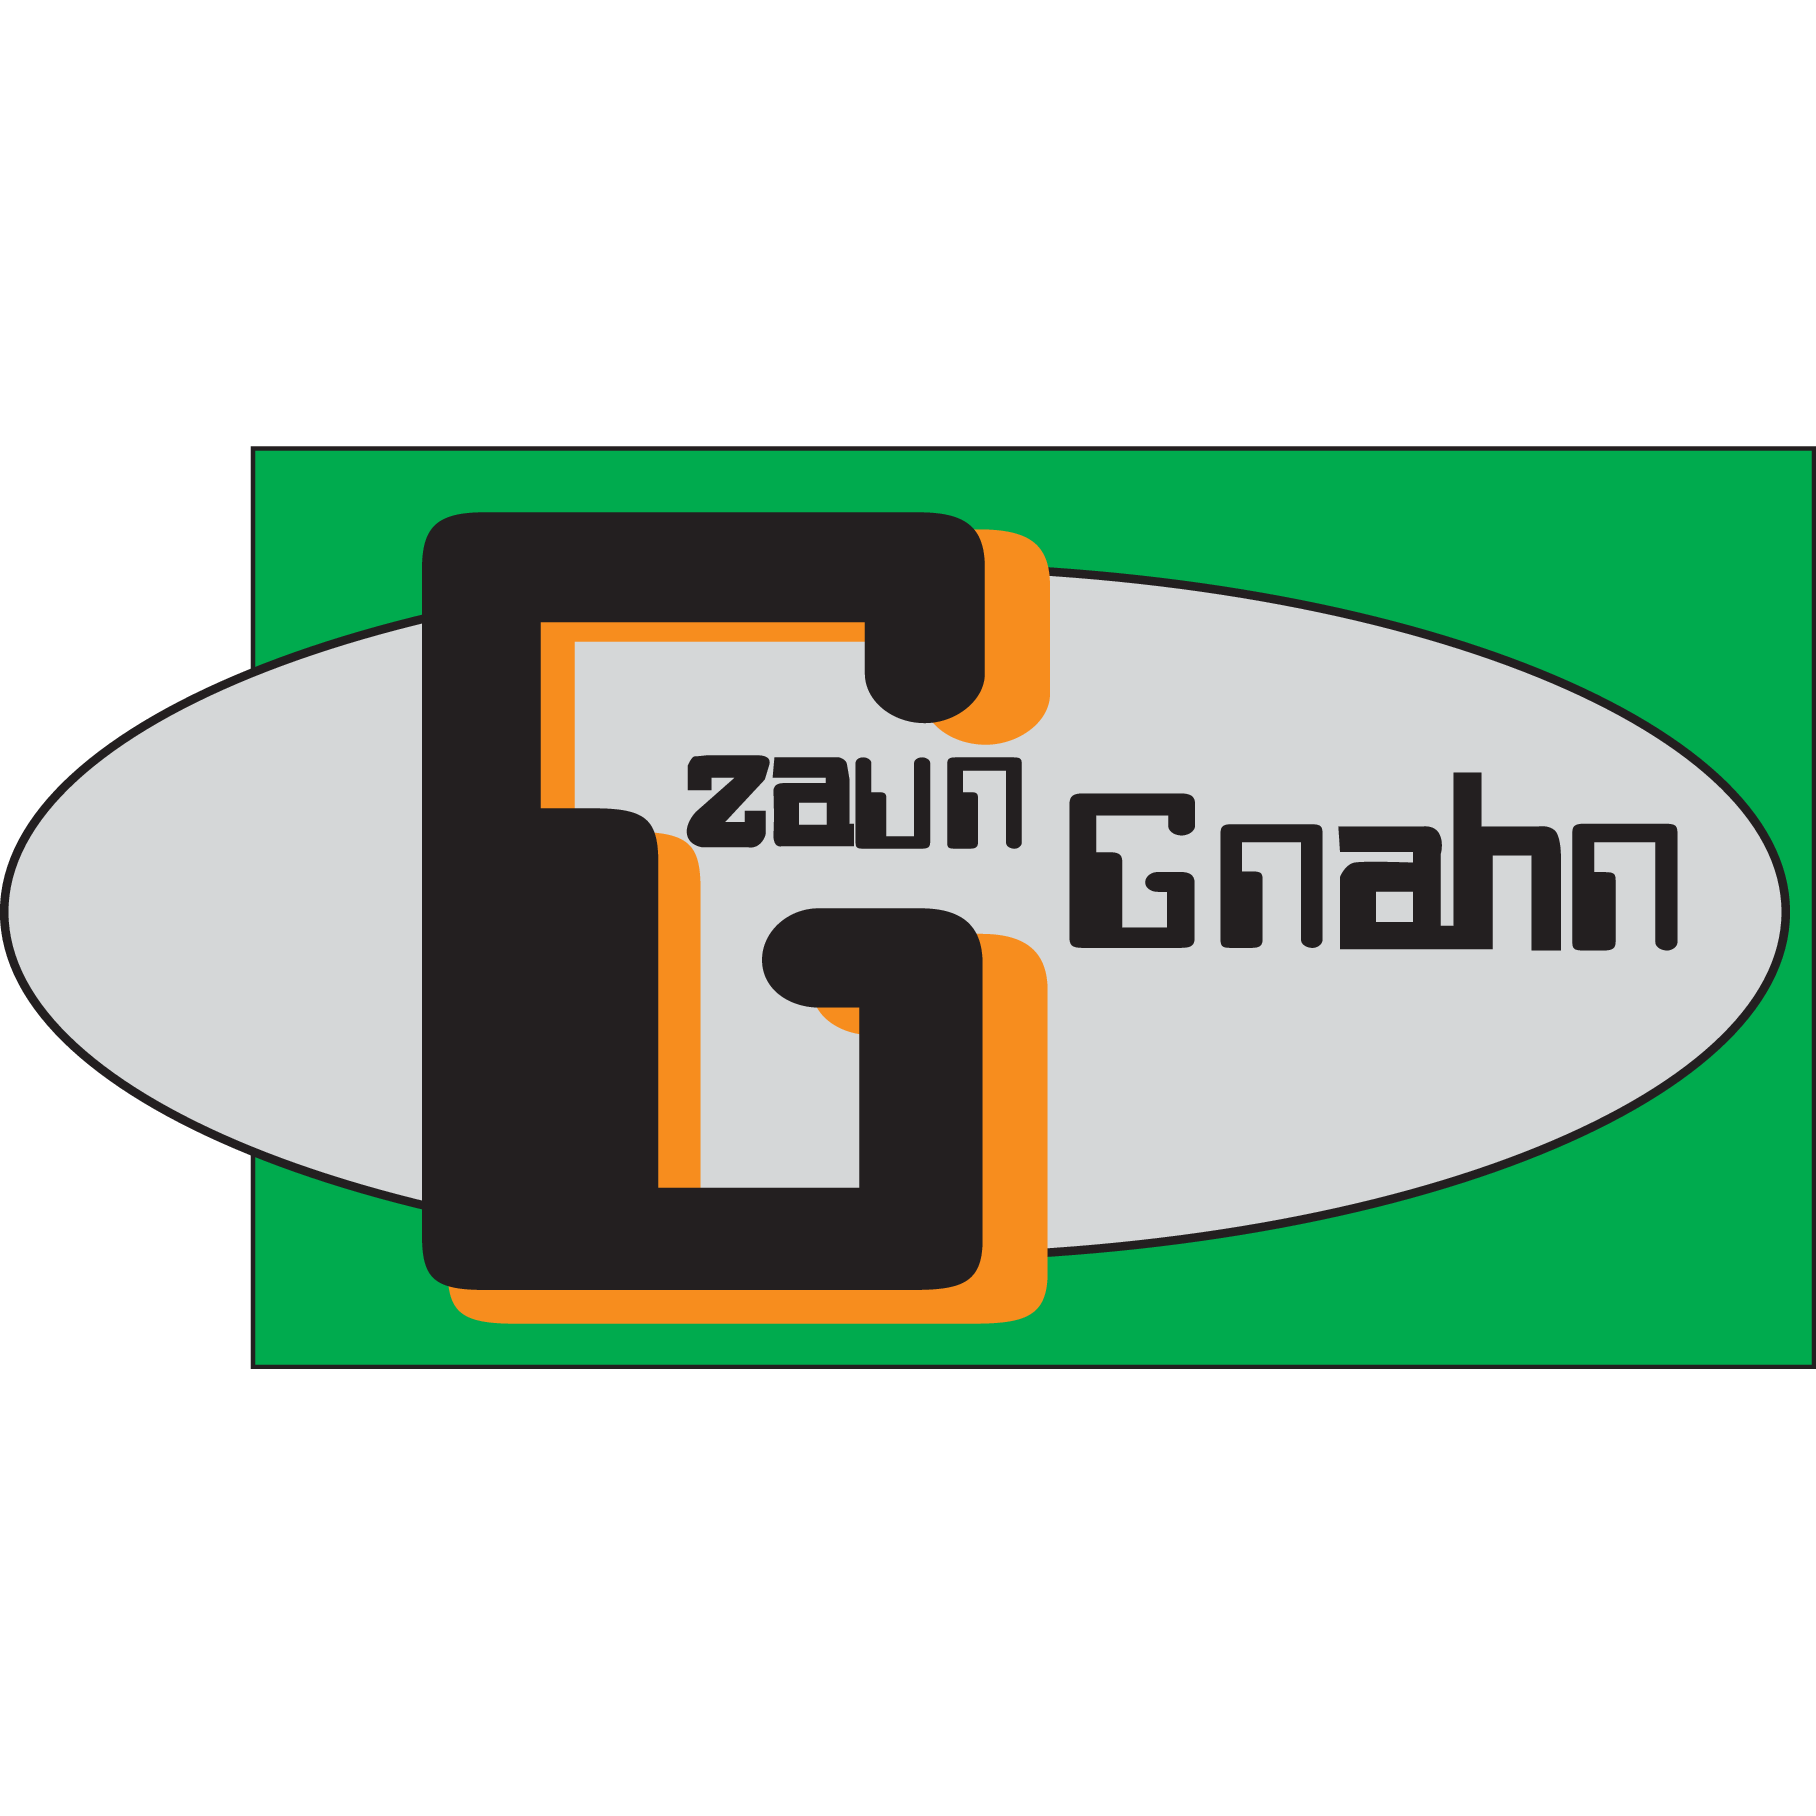 Zaun Gnahn in Pommelsbrunn - Logo